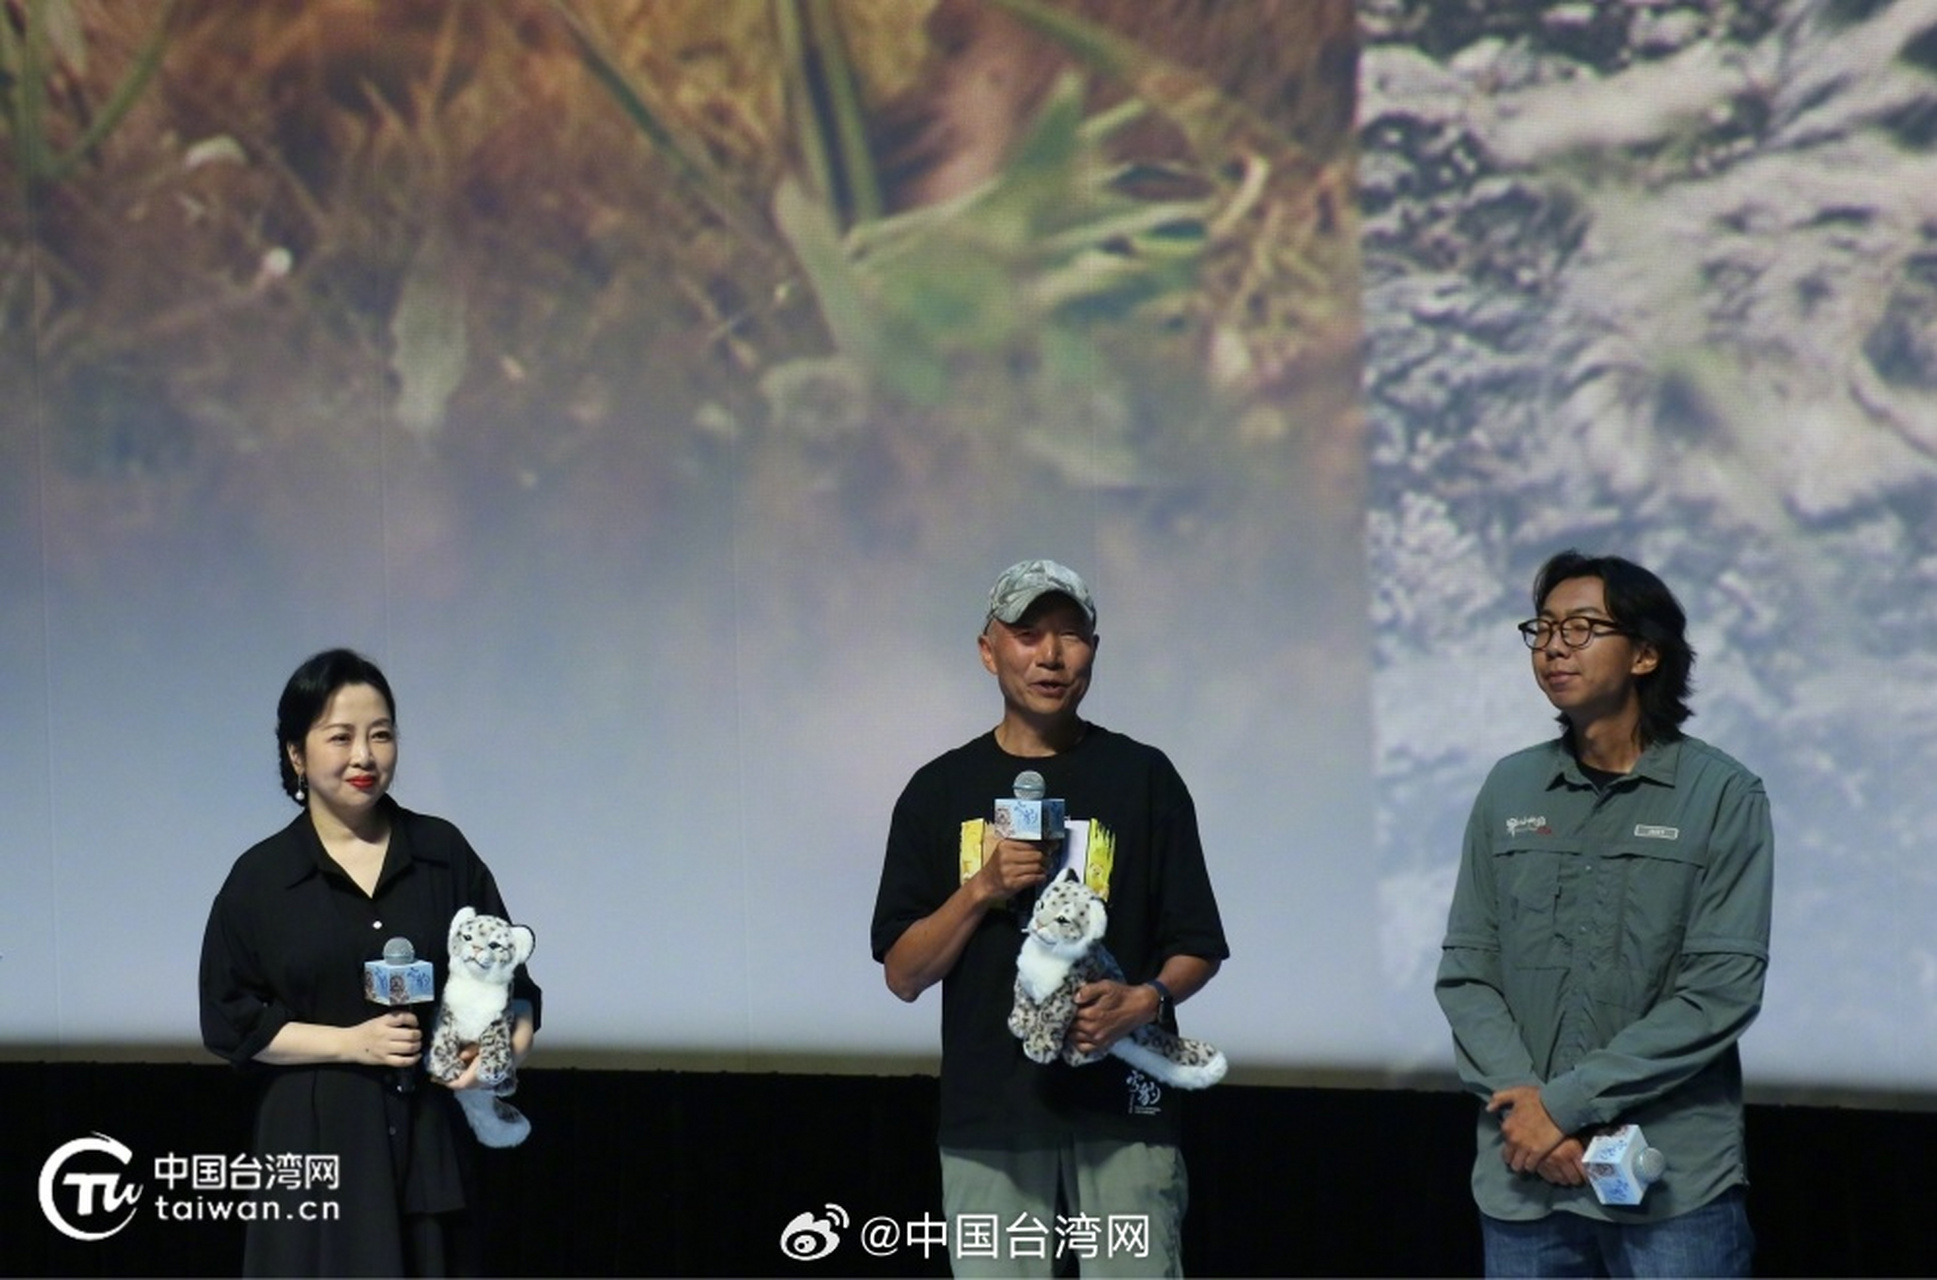 【朱亚文配音《雪豹和她的朋友们》 中国人自己的雪豹电影彰显生命